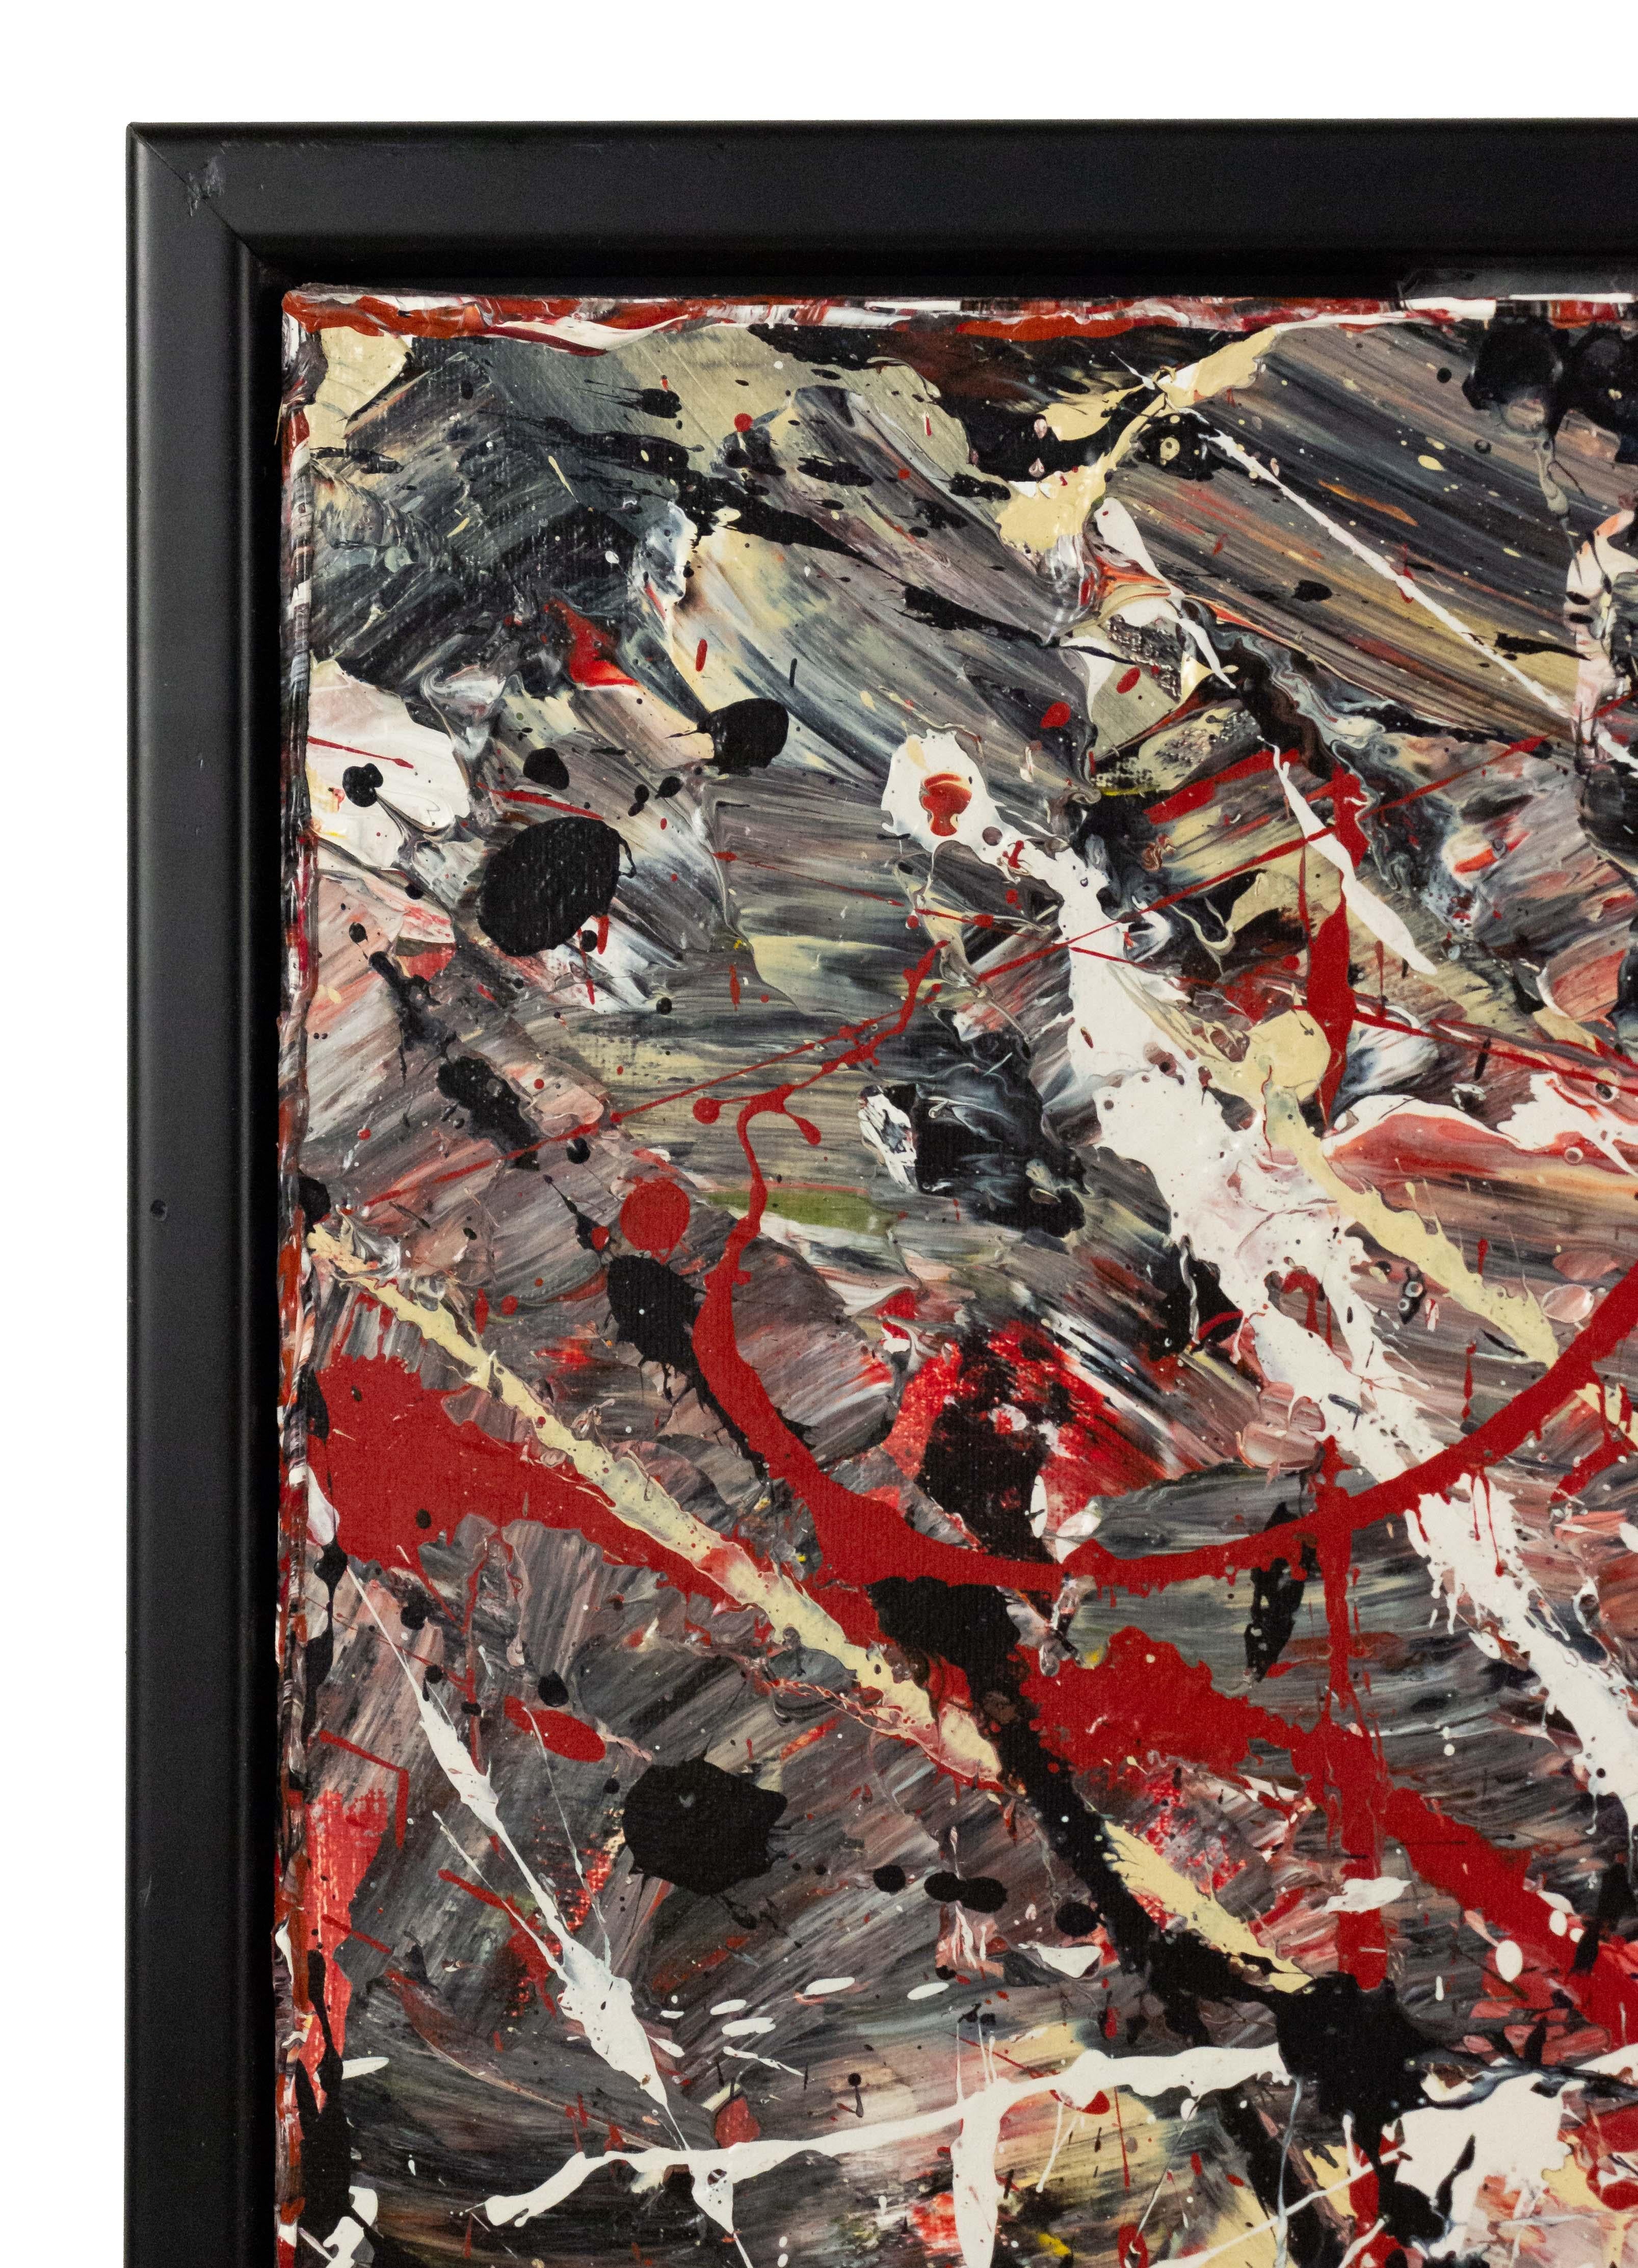 Acrylique sur toile, peinture abstraite d'action en rouge, noir et blanc par Richard Rumi, 